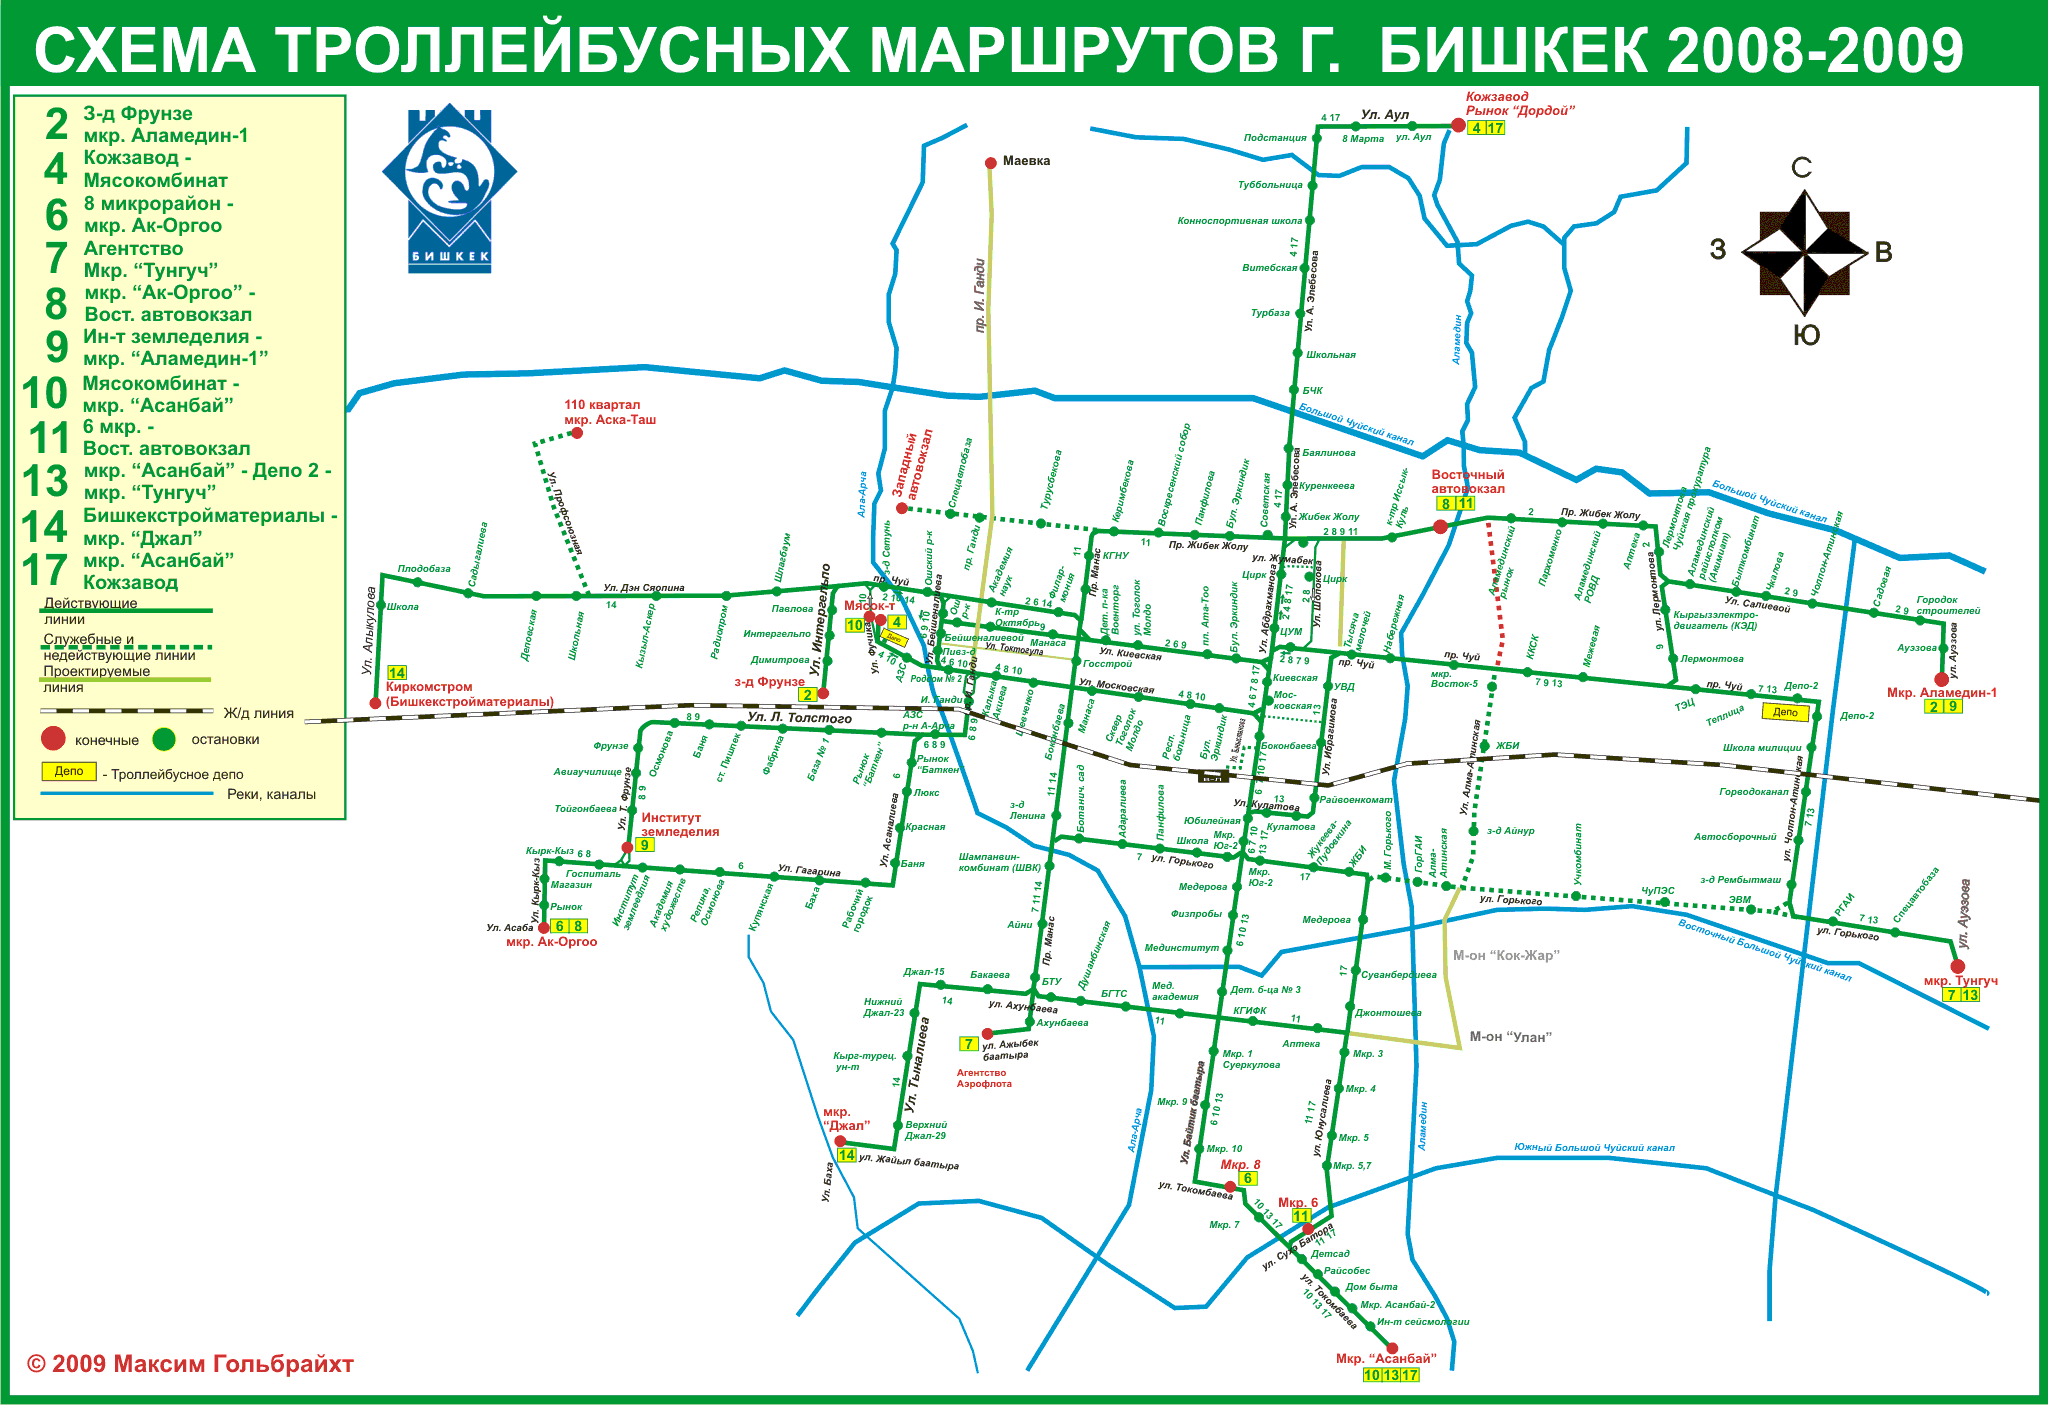 Biszkek — Maps